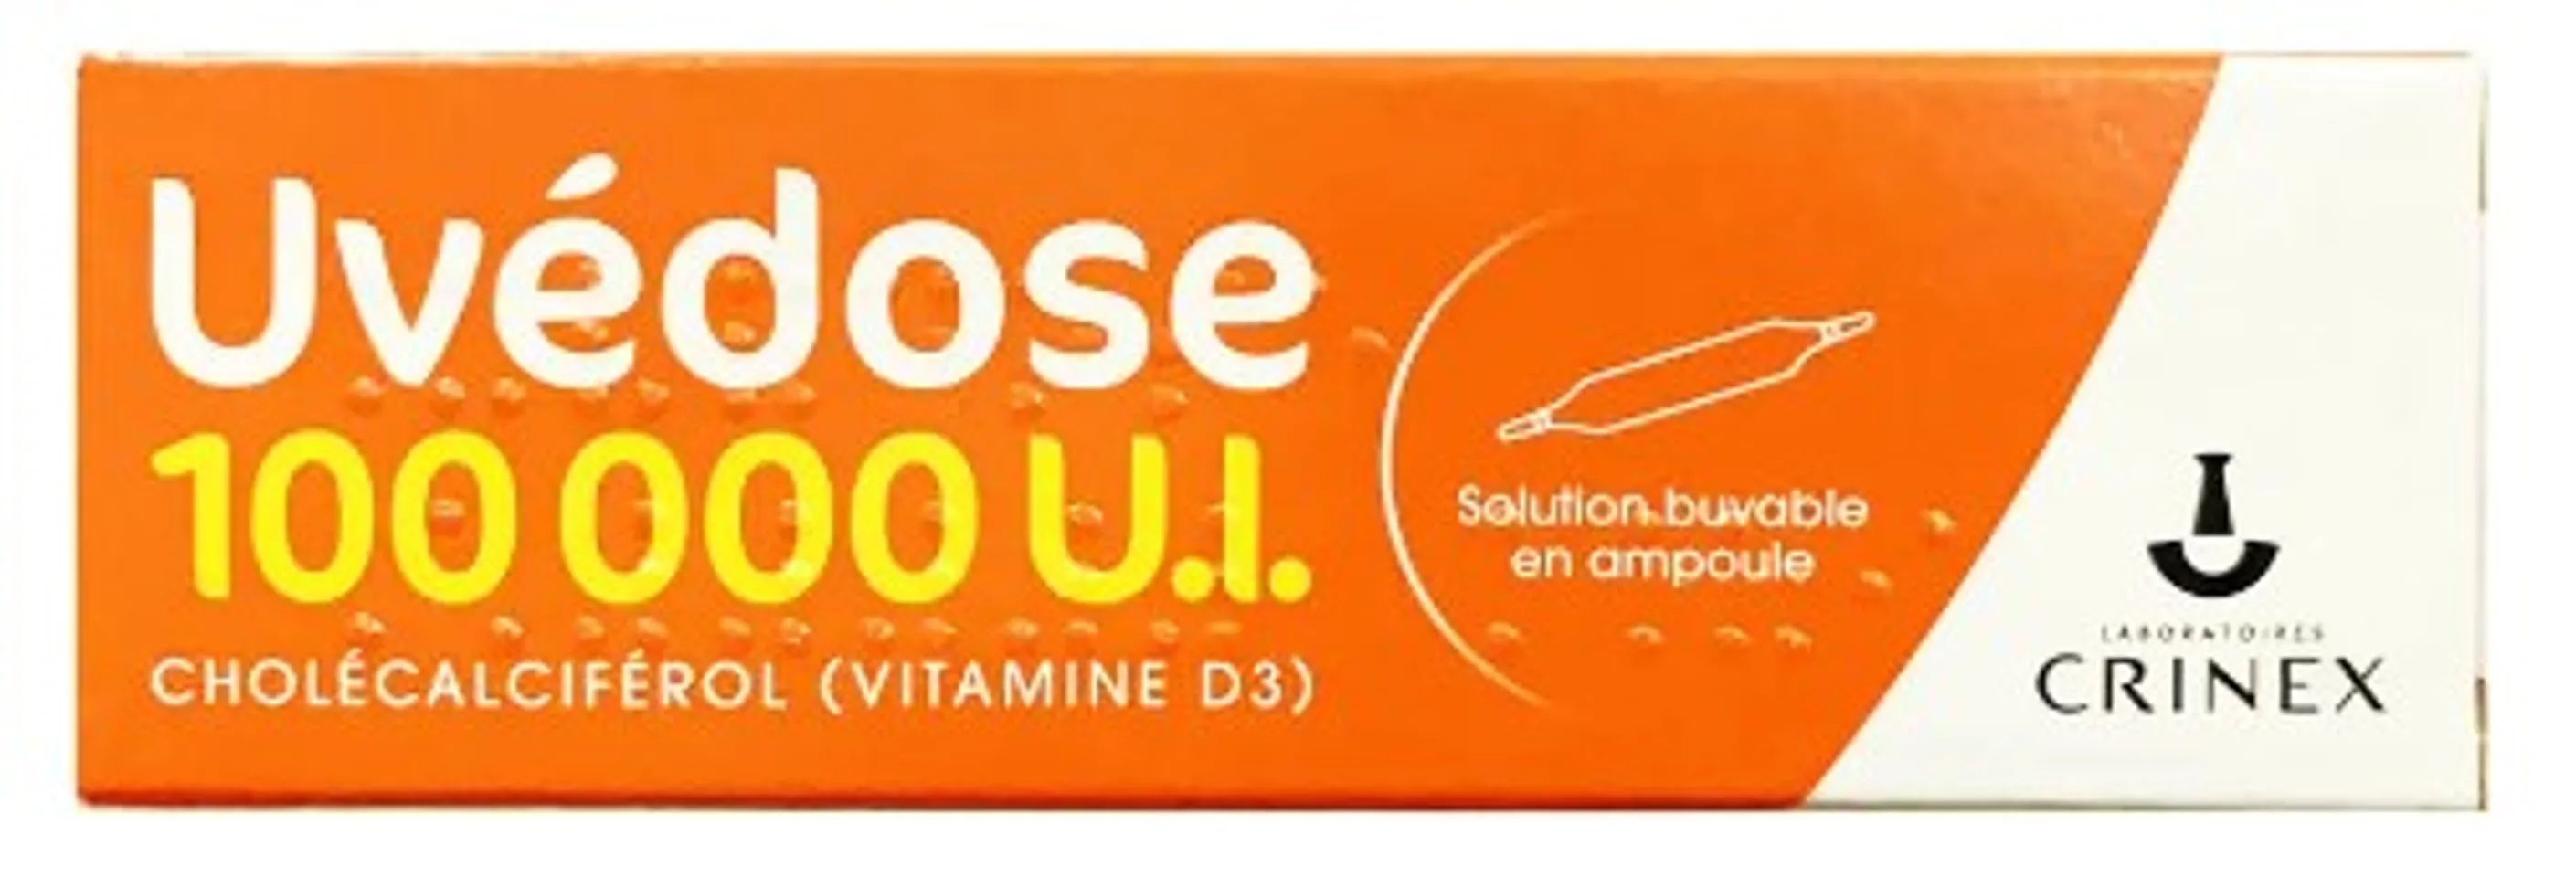 Vitamin D3 Uvedose liều cao 100000 UI chính hãng của Pháp